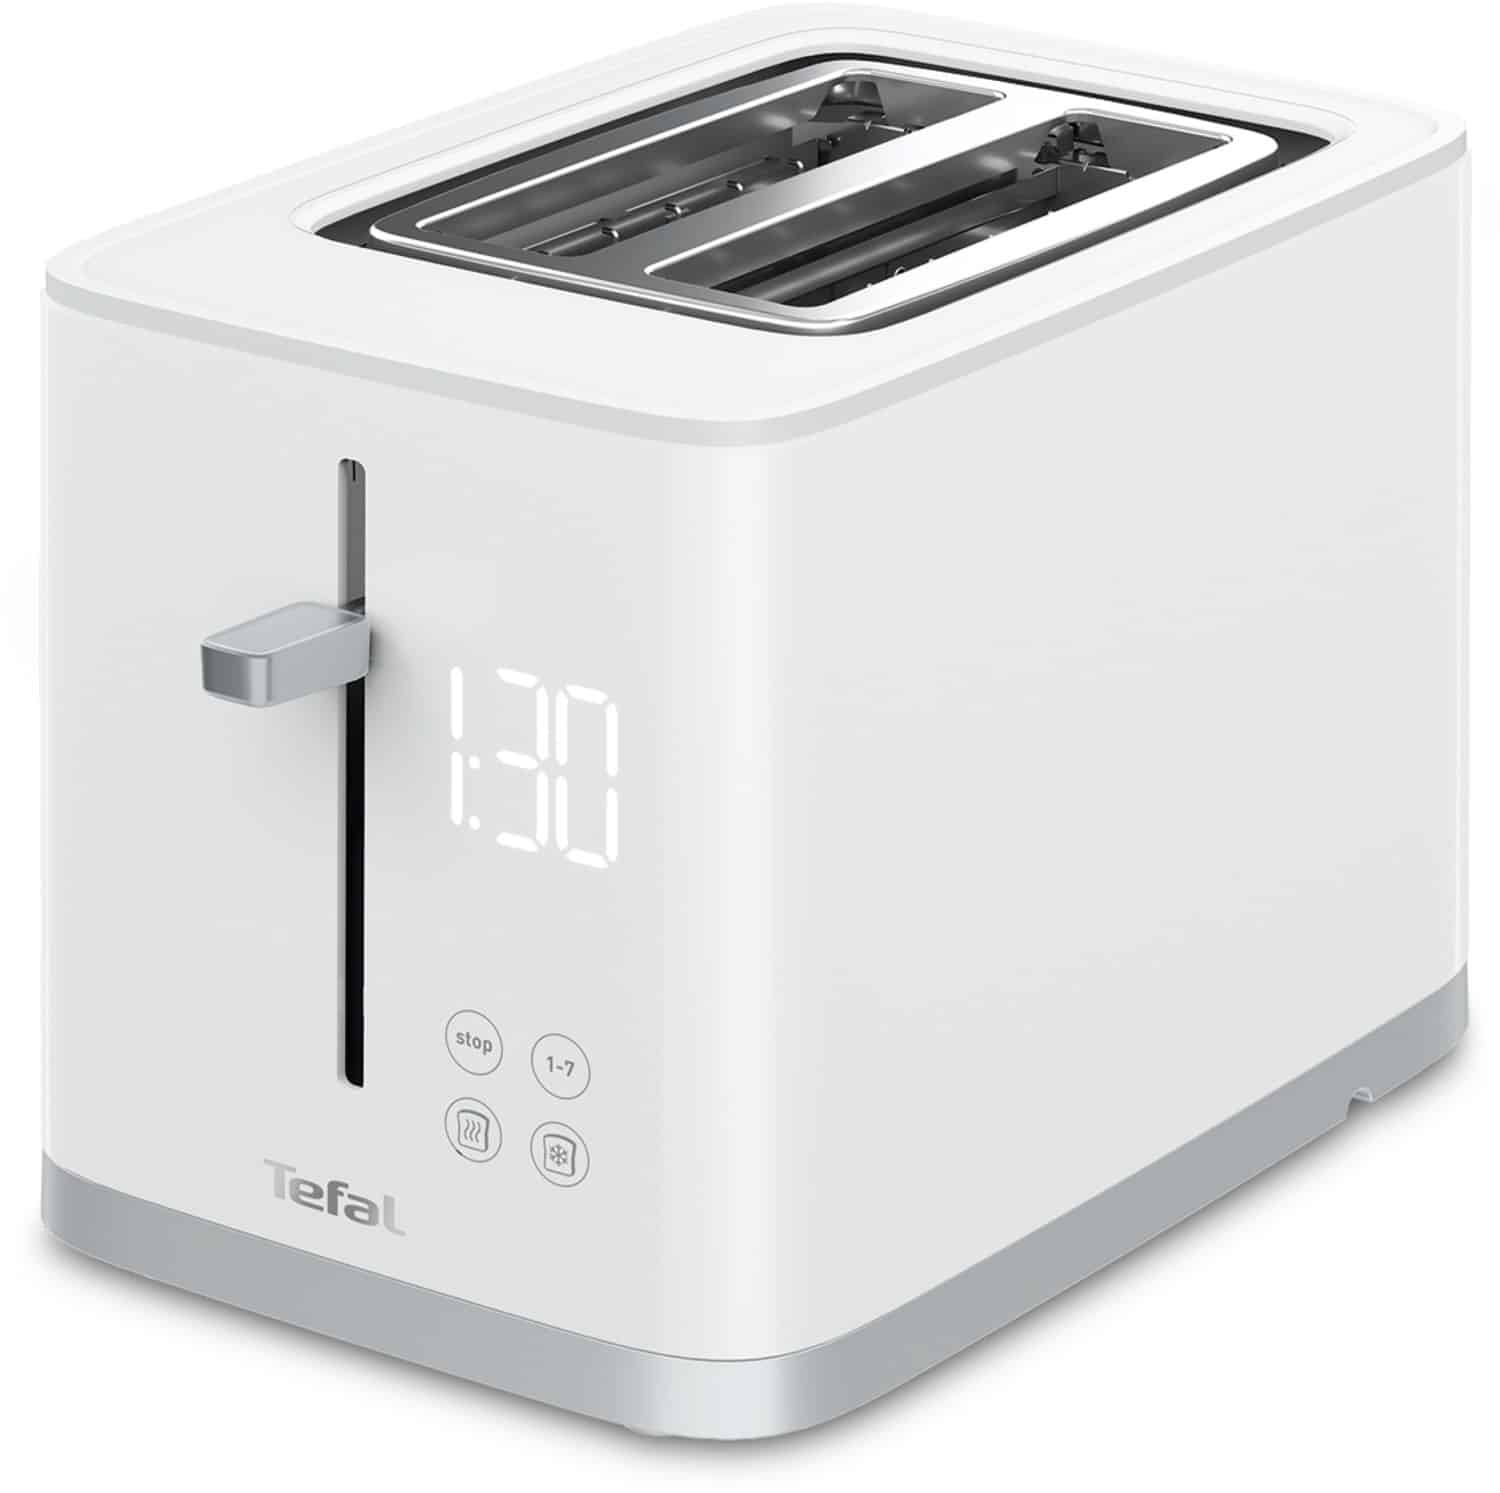 Tefal TT6931 Kompakt-Toaster weiß